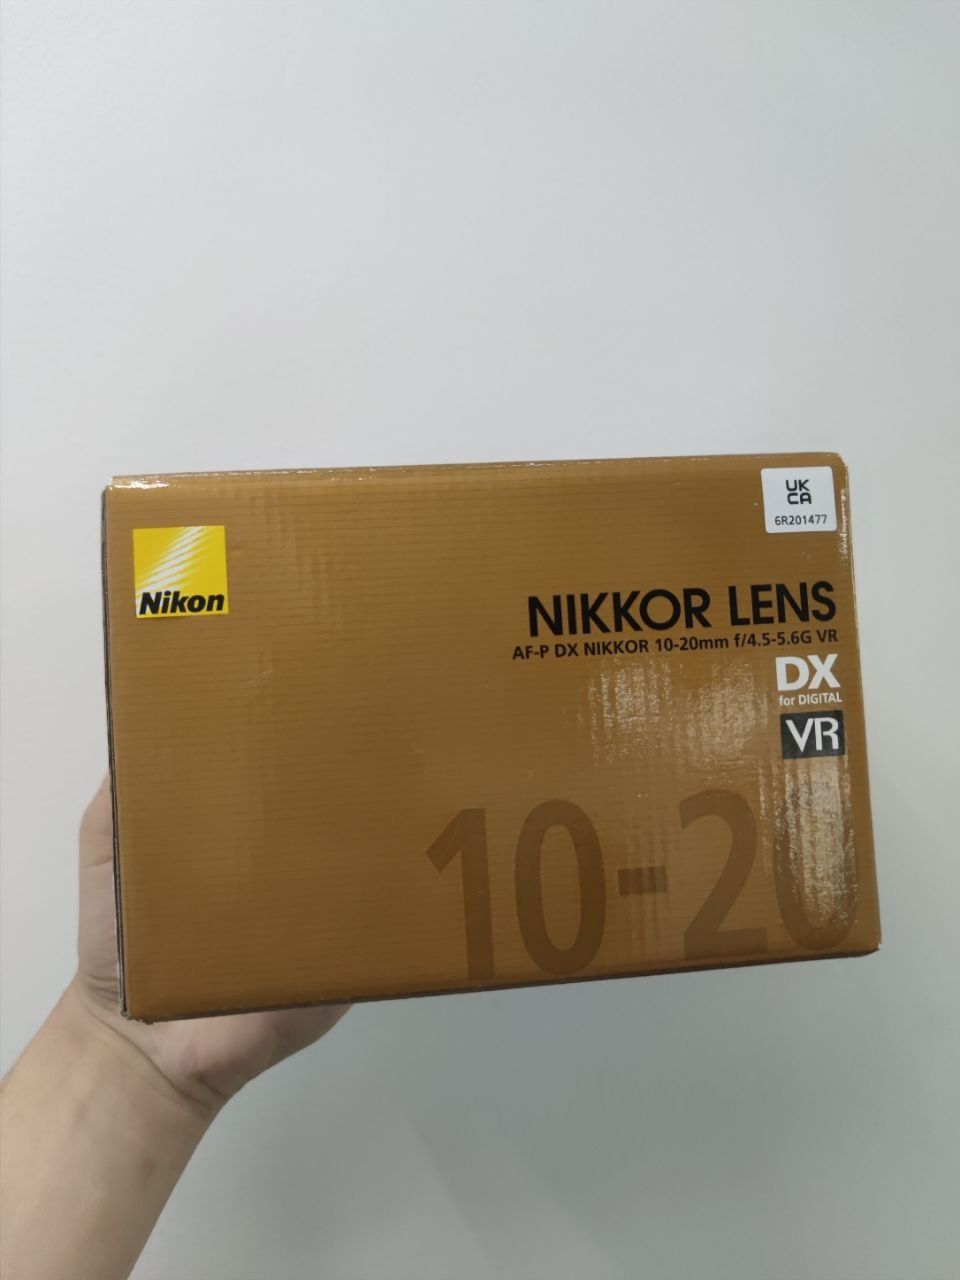 Obiectiv Nikon Nikkor Lens 10-20mm f/4.5-5.6G VR AF-P DX Sigilat!